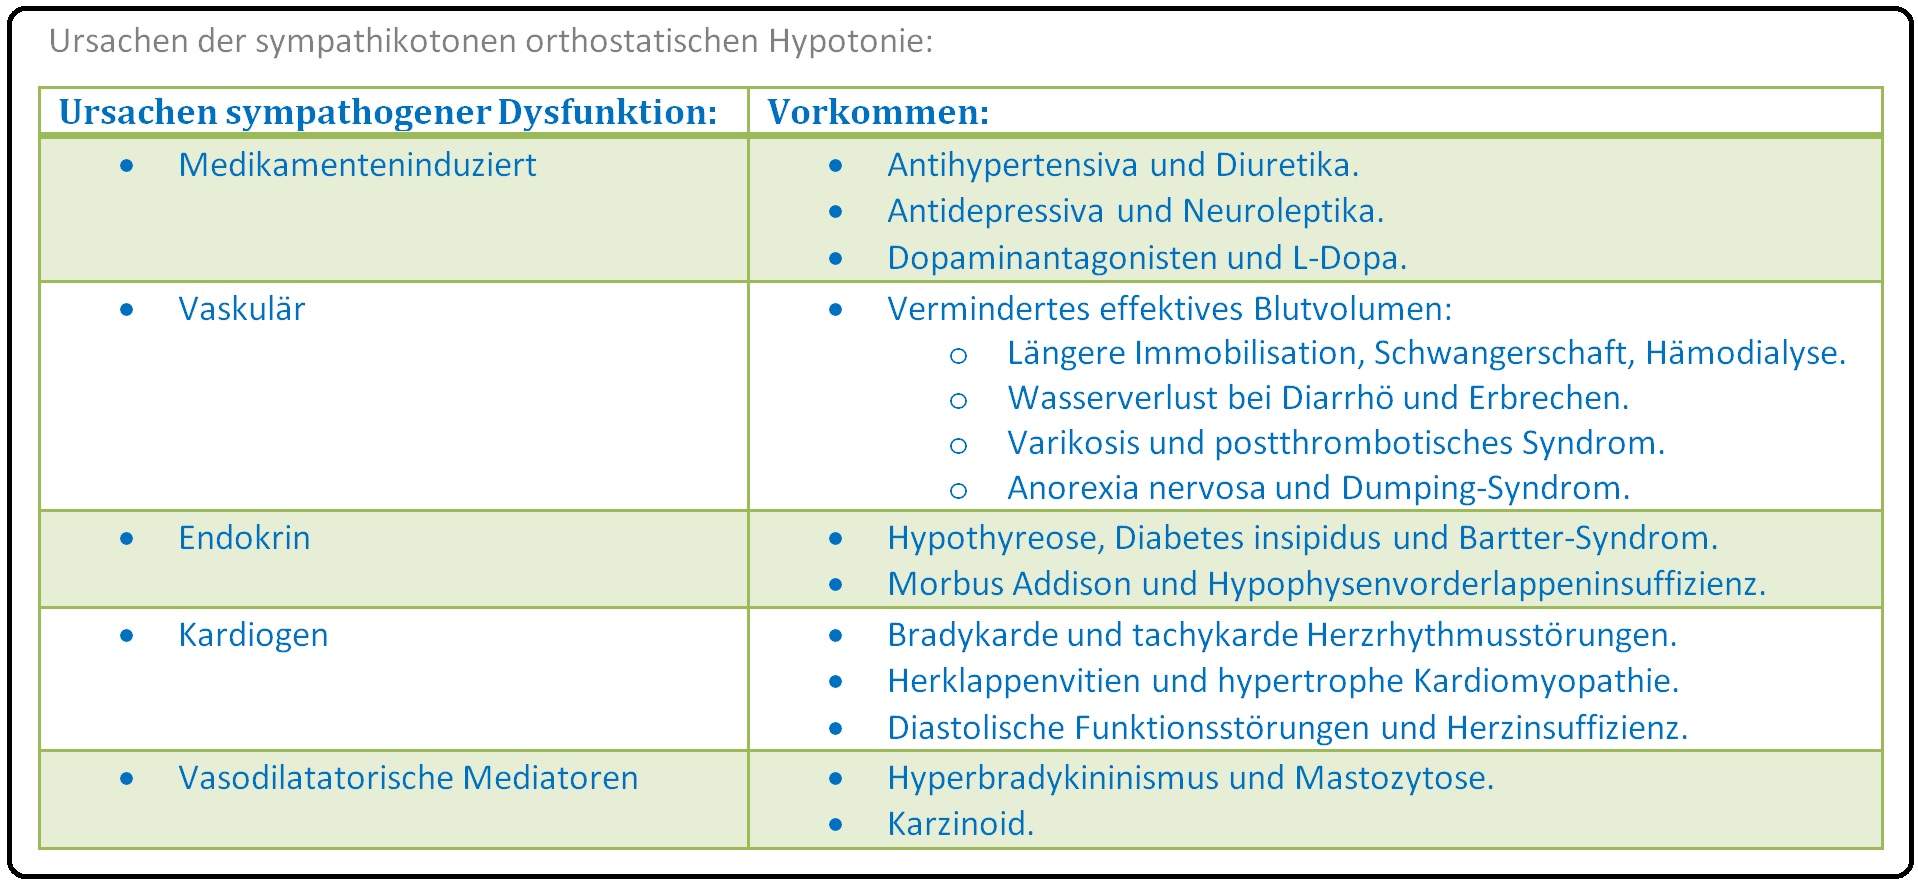 524 Ursachen der sympathikotonen orthostatischen Hypotonie